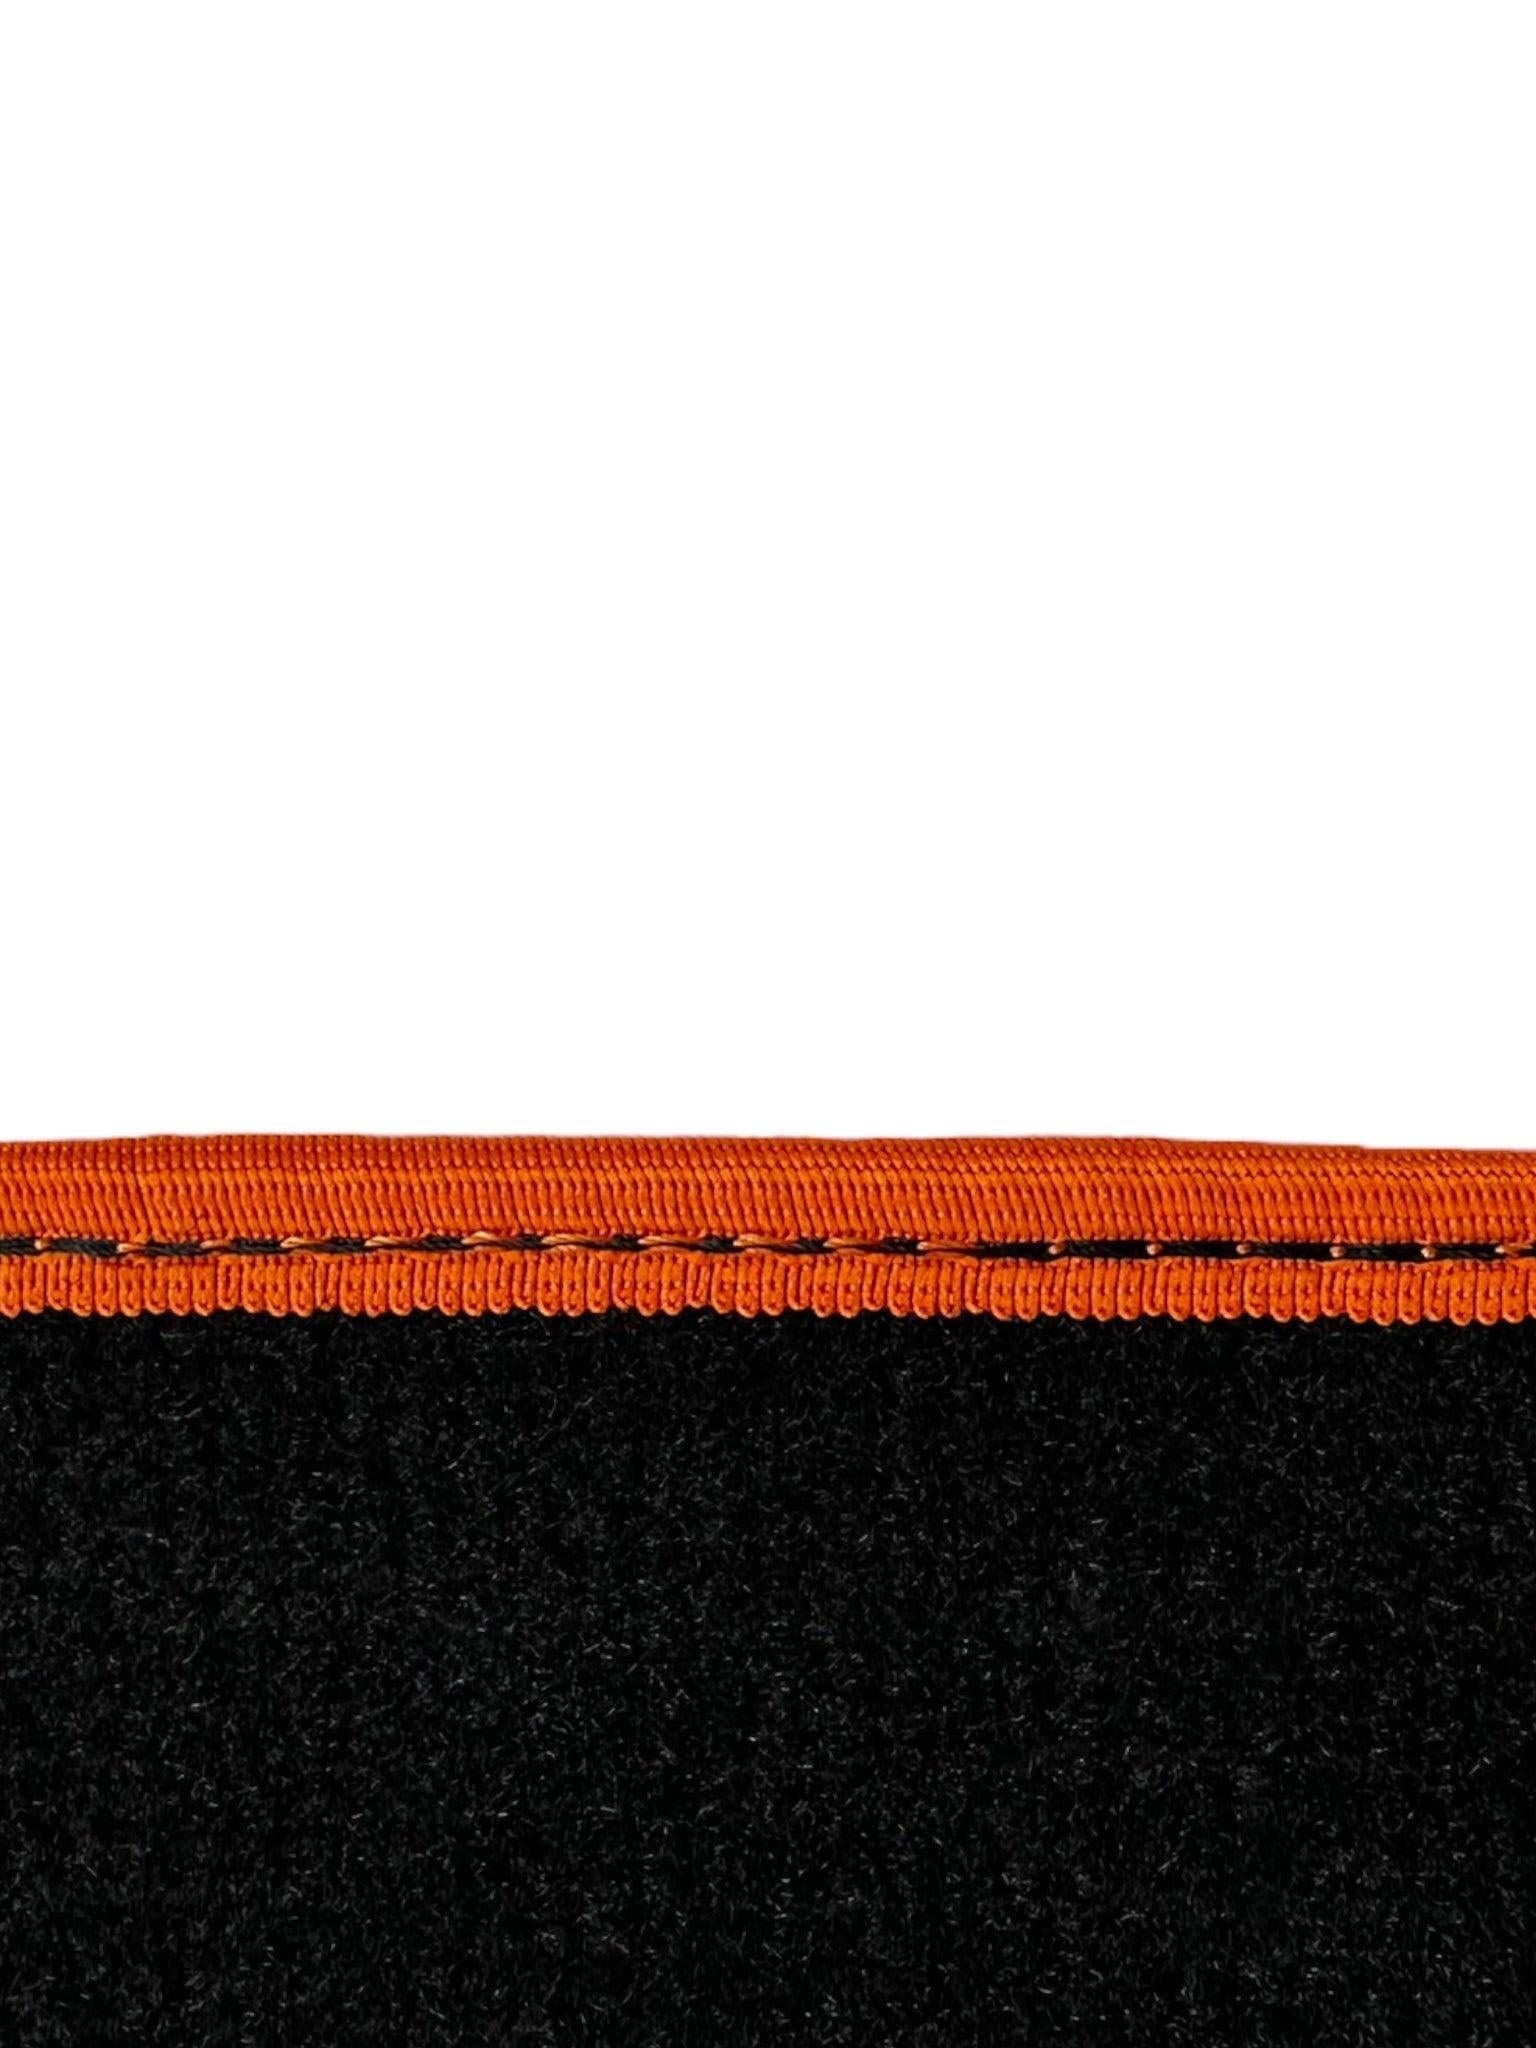 Black Floor Floor Mats For BMW X3 Series G01 | Orange Trim